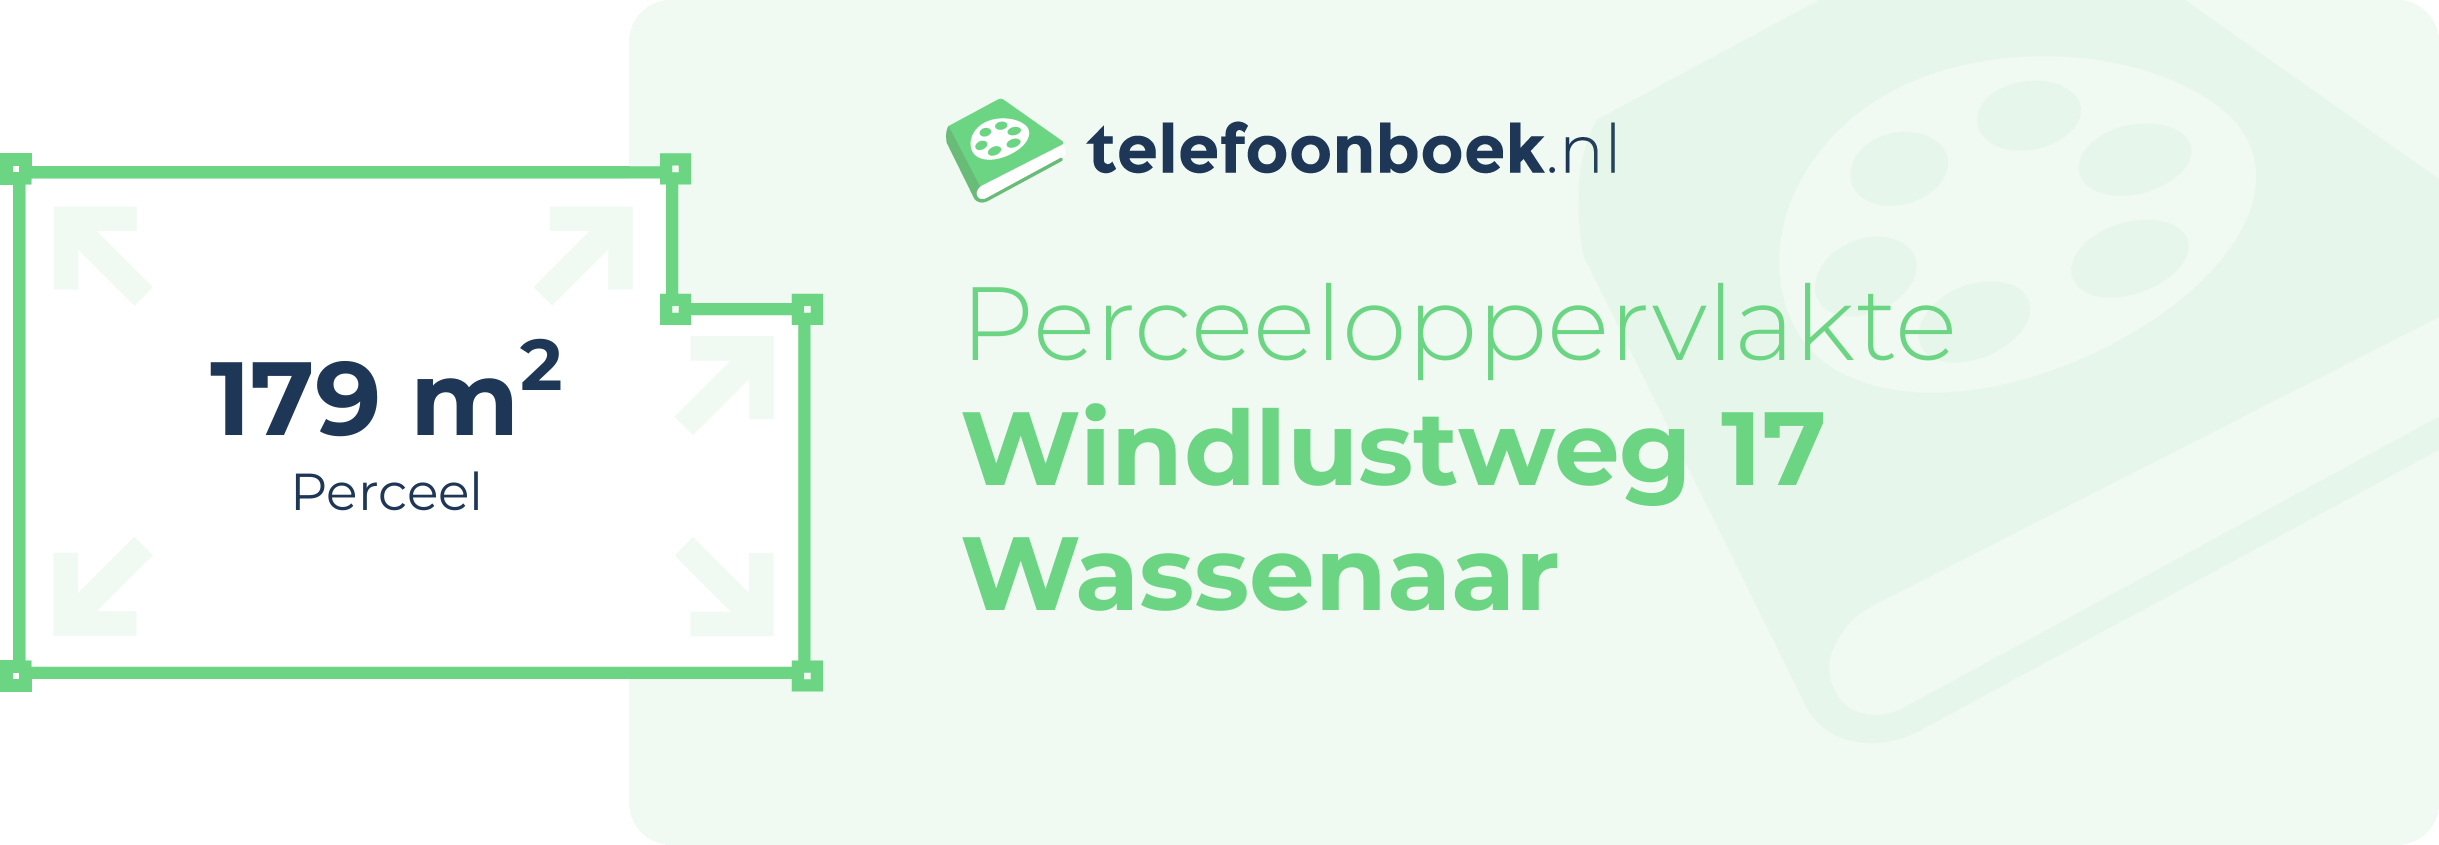 Perceeloppervlakte Windlustweg 17 Wassenaar